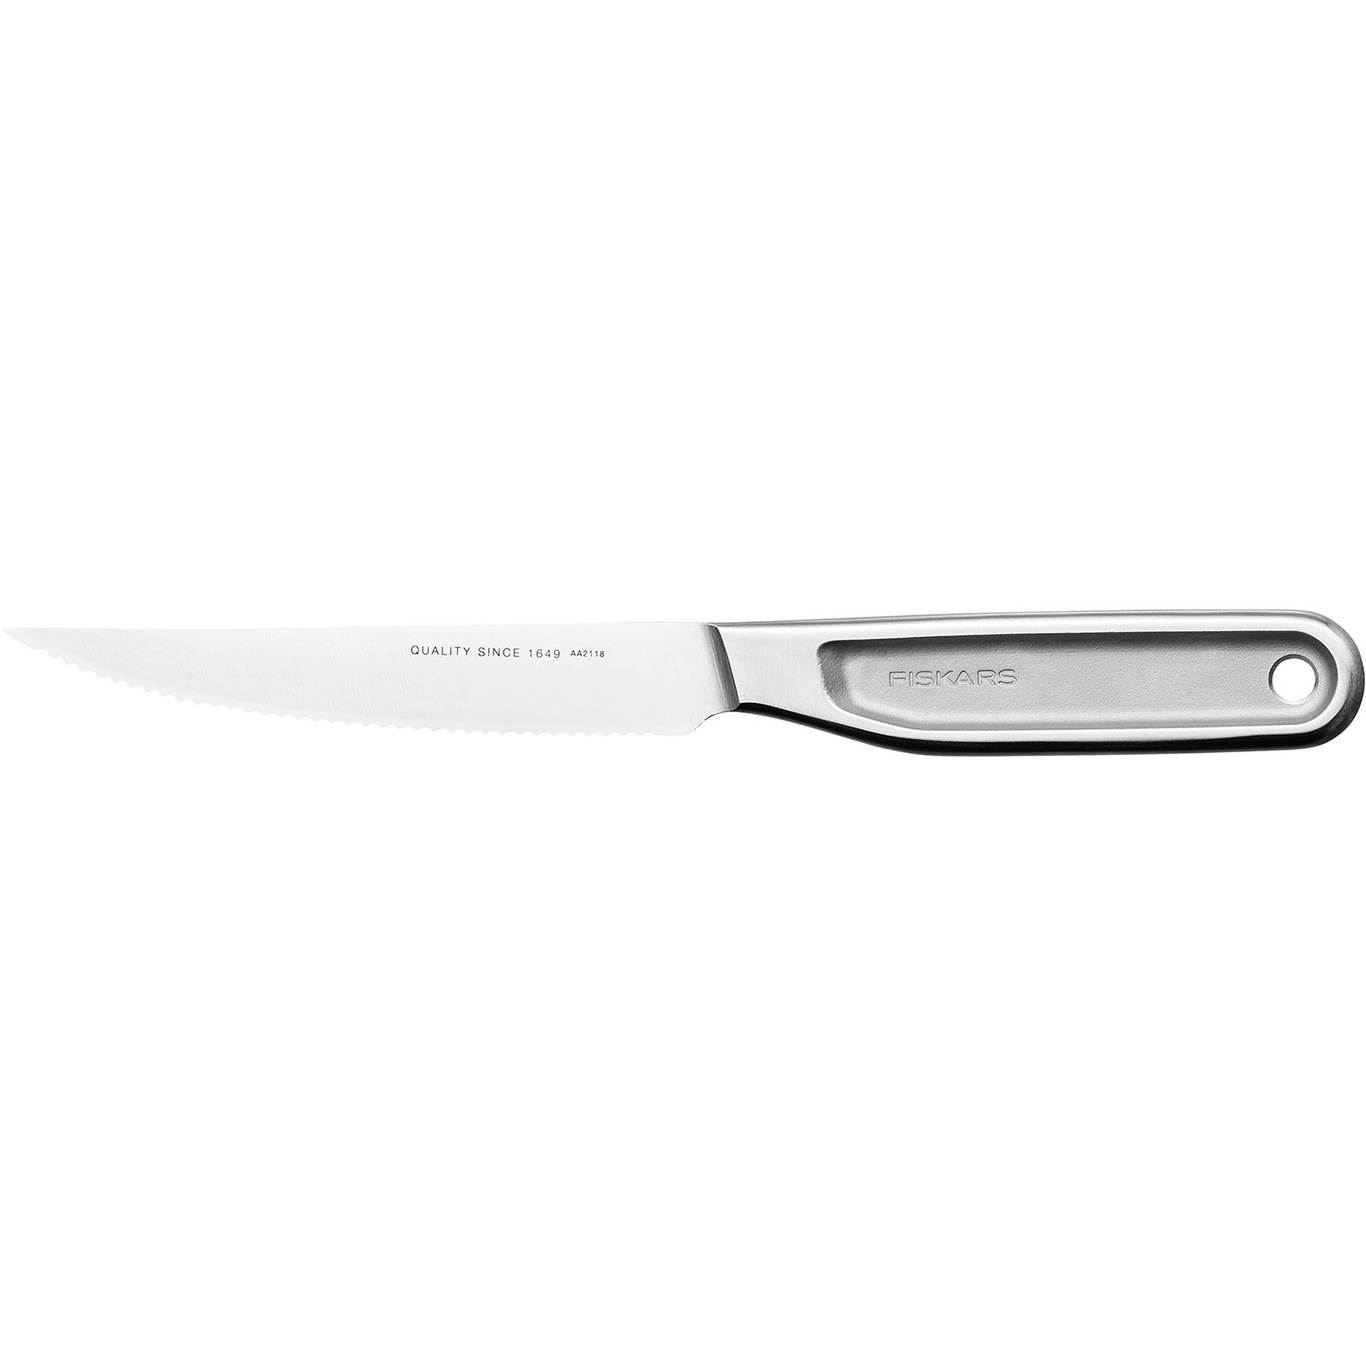 All Steel Tomato Knife, 12 cm